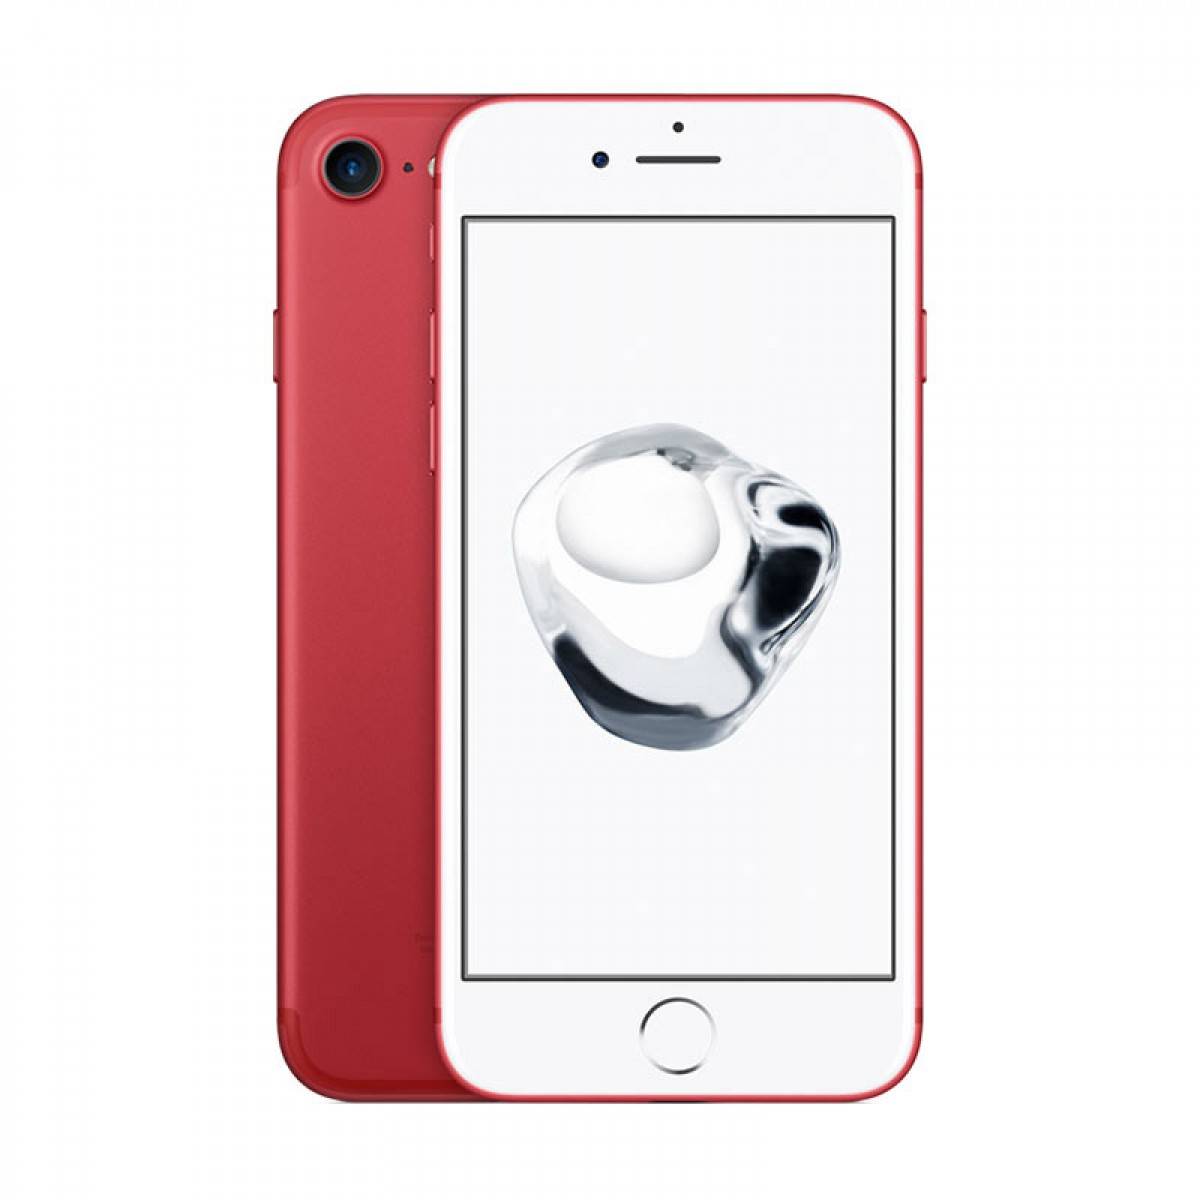 匡威红色特别版 Apple/苹果 iPhone 7 128G 全网通4G智能手机